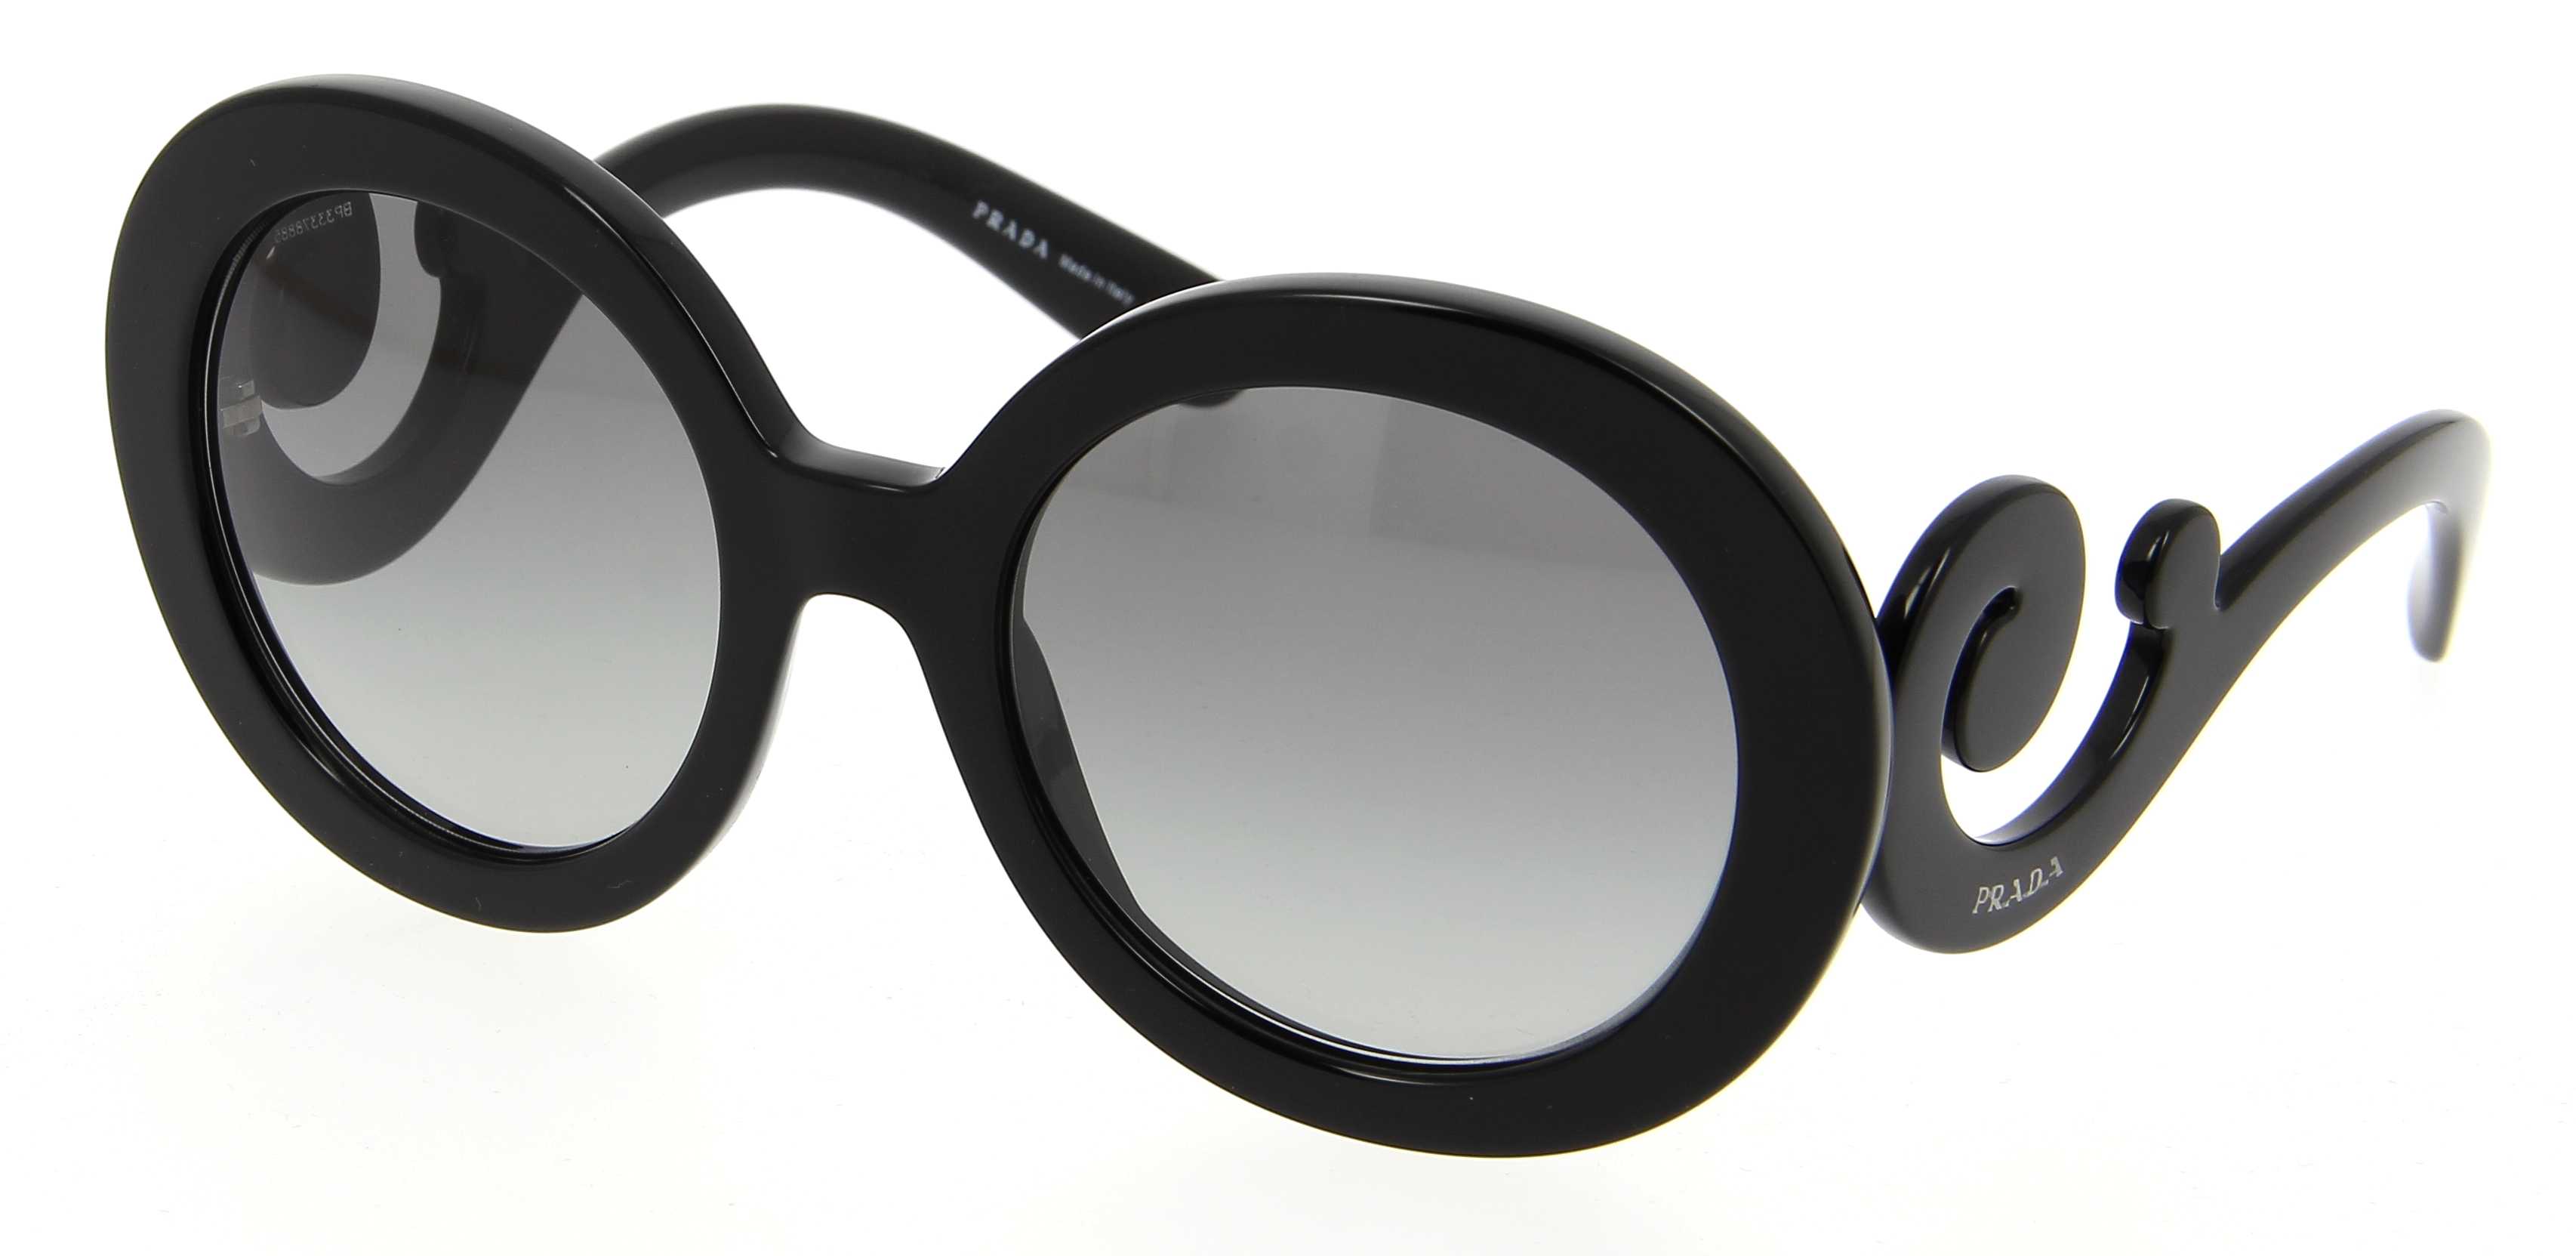 Monture de lunettes PRADA noir Montures de lunettes Prada Femme Femme Accessoires Prada Femme Montures de lunettes Prada Femme 